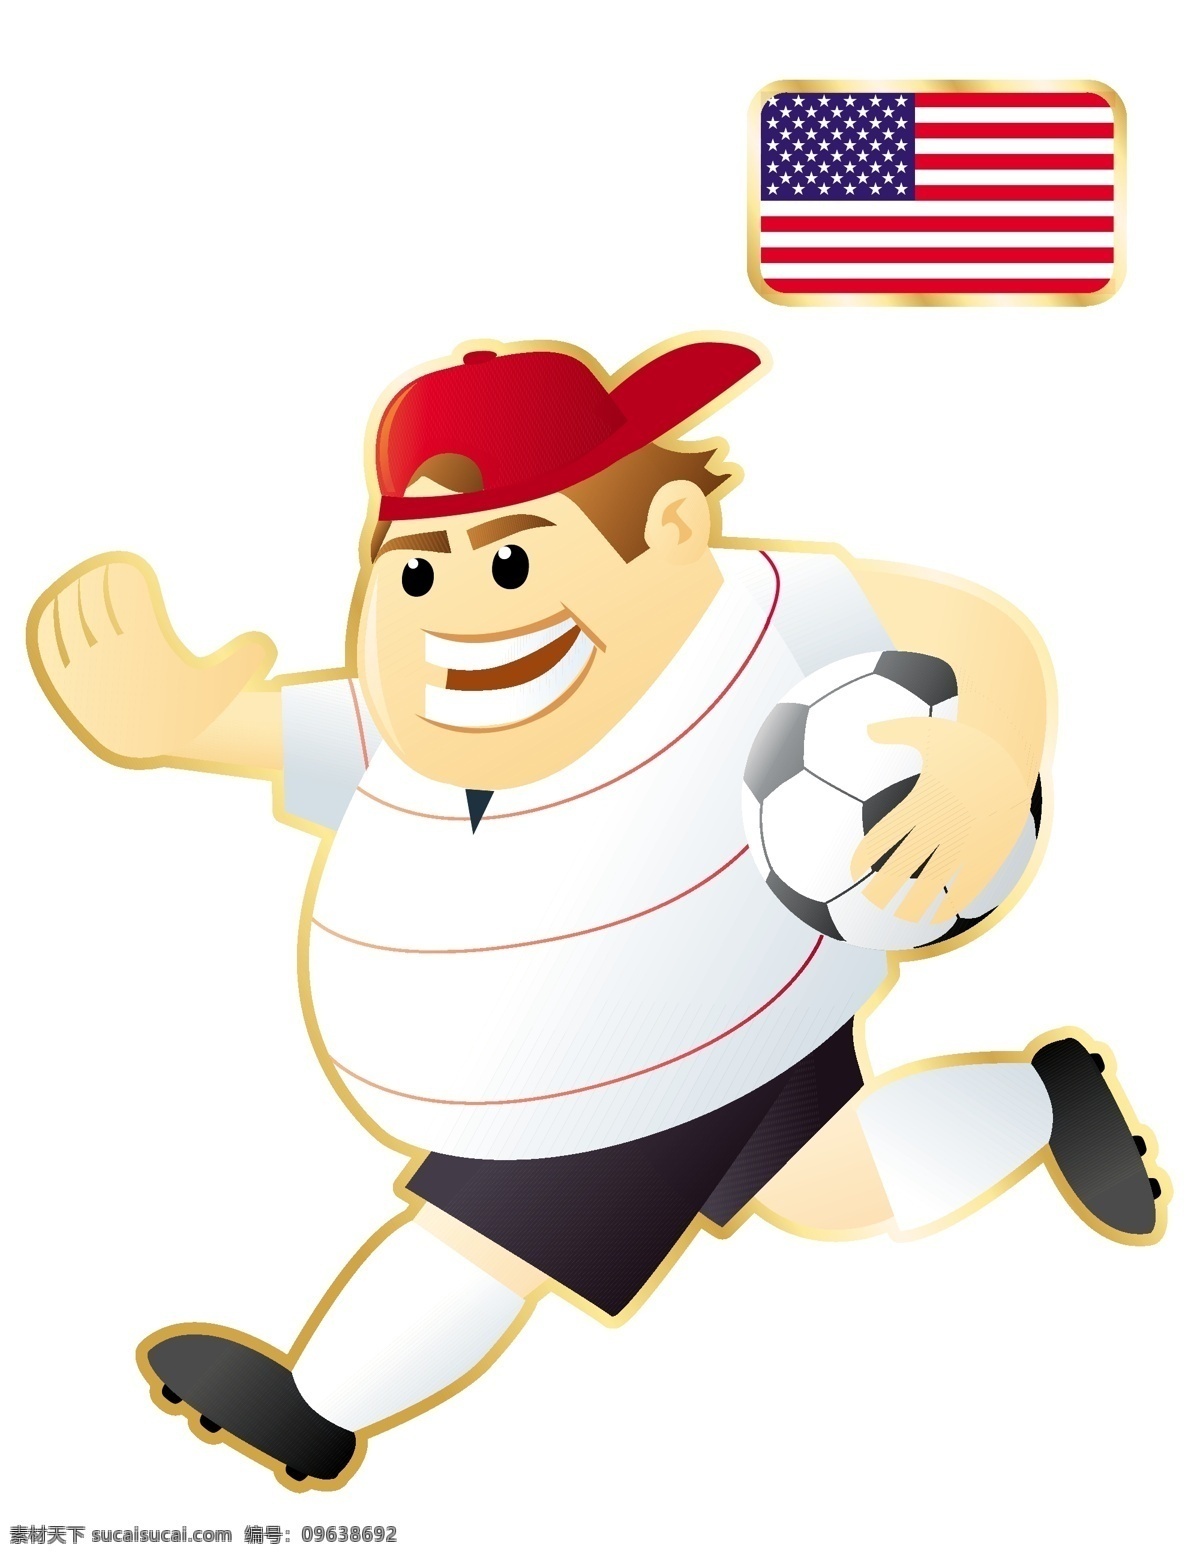 不同 国家 足球 卡通 人物 形象 矢量图 运动员 大胖子 运动 踢球 外国 矢量 扁平化 平面